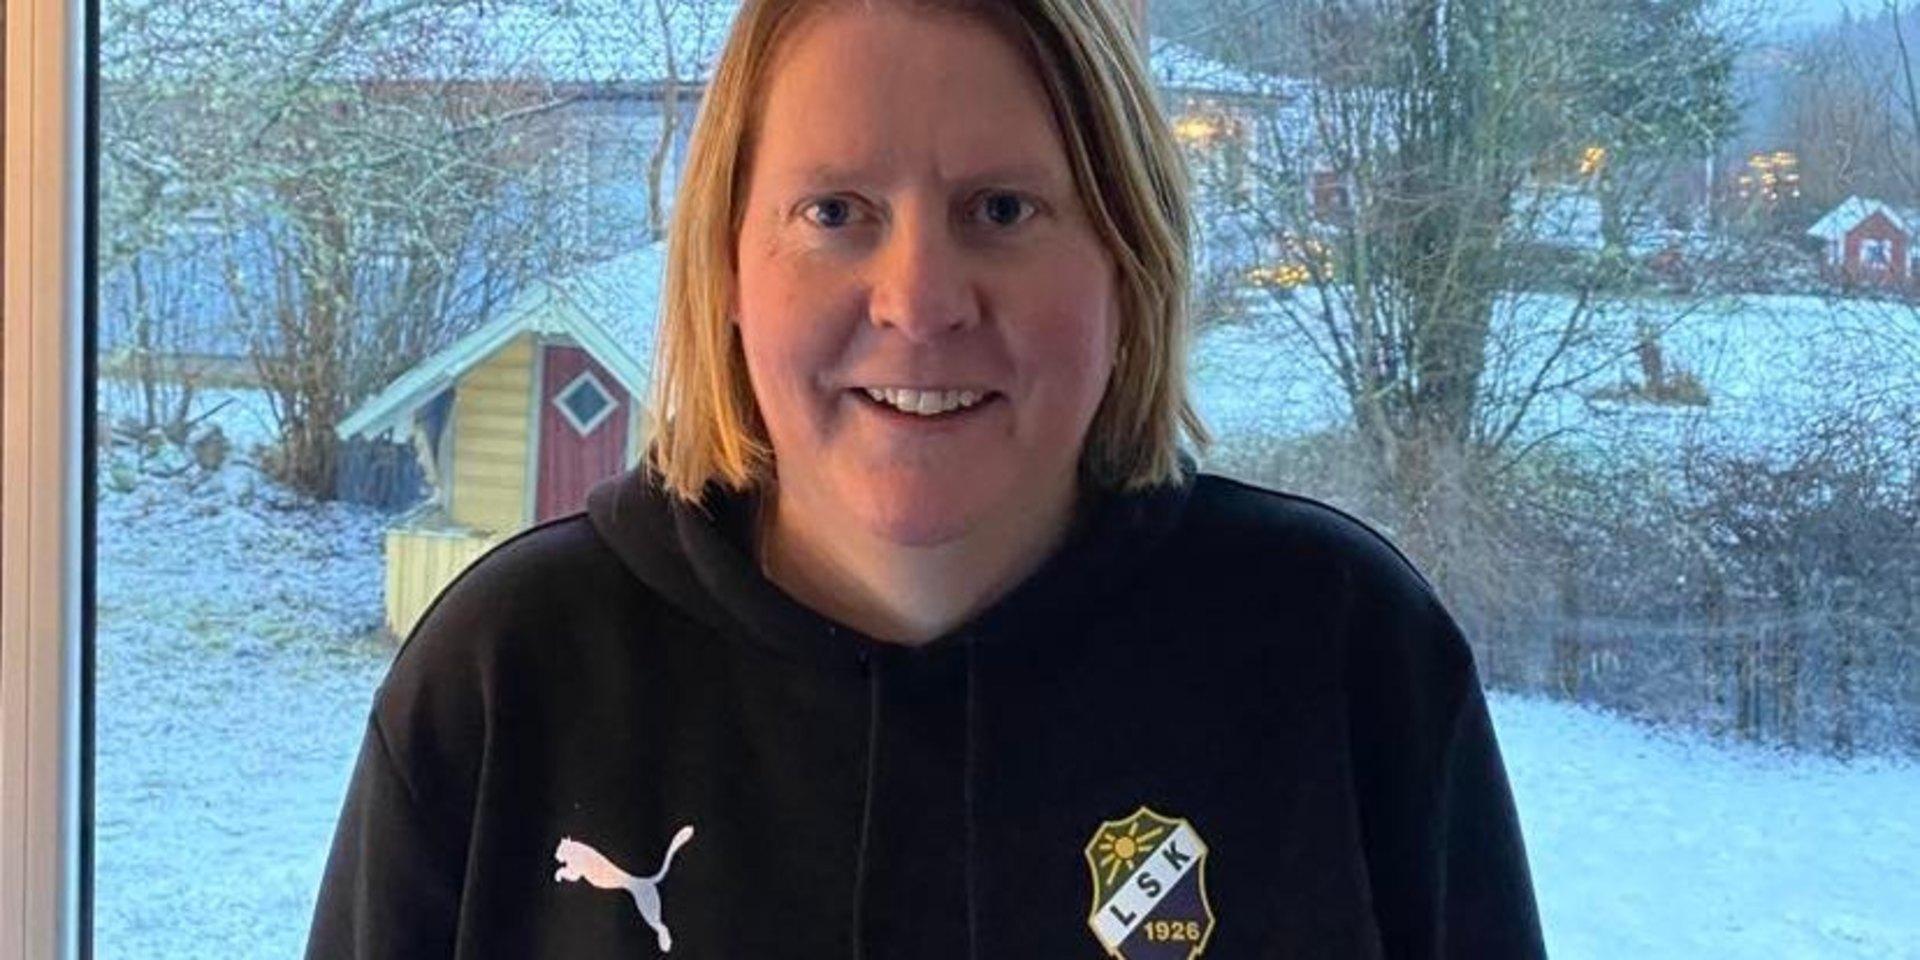 Efter nästan 20 år som seniorspelare, i Groheds IF och IK Oddevold, får Jessica Hallberg sitt första tränaruppdrag i ett a-lag när hon blir assisterande tränare i Ljungskile SK:s damlag. 